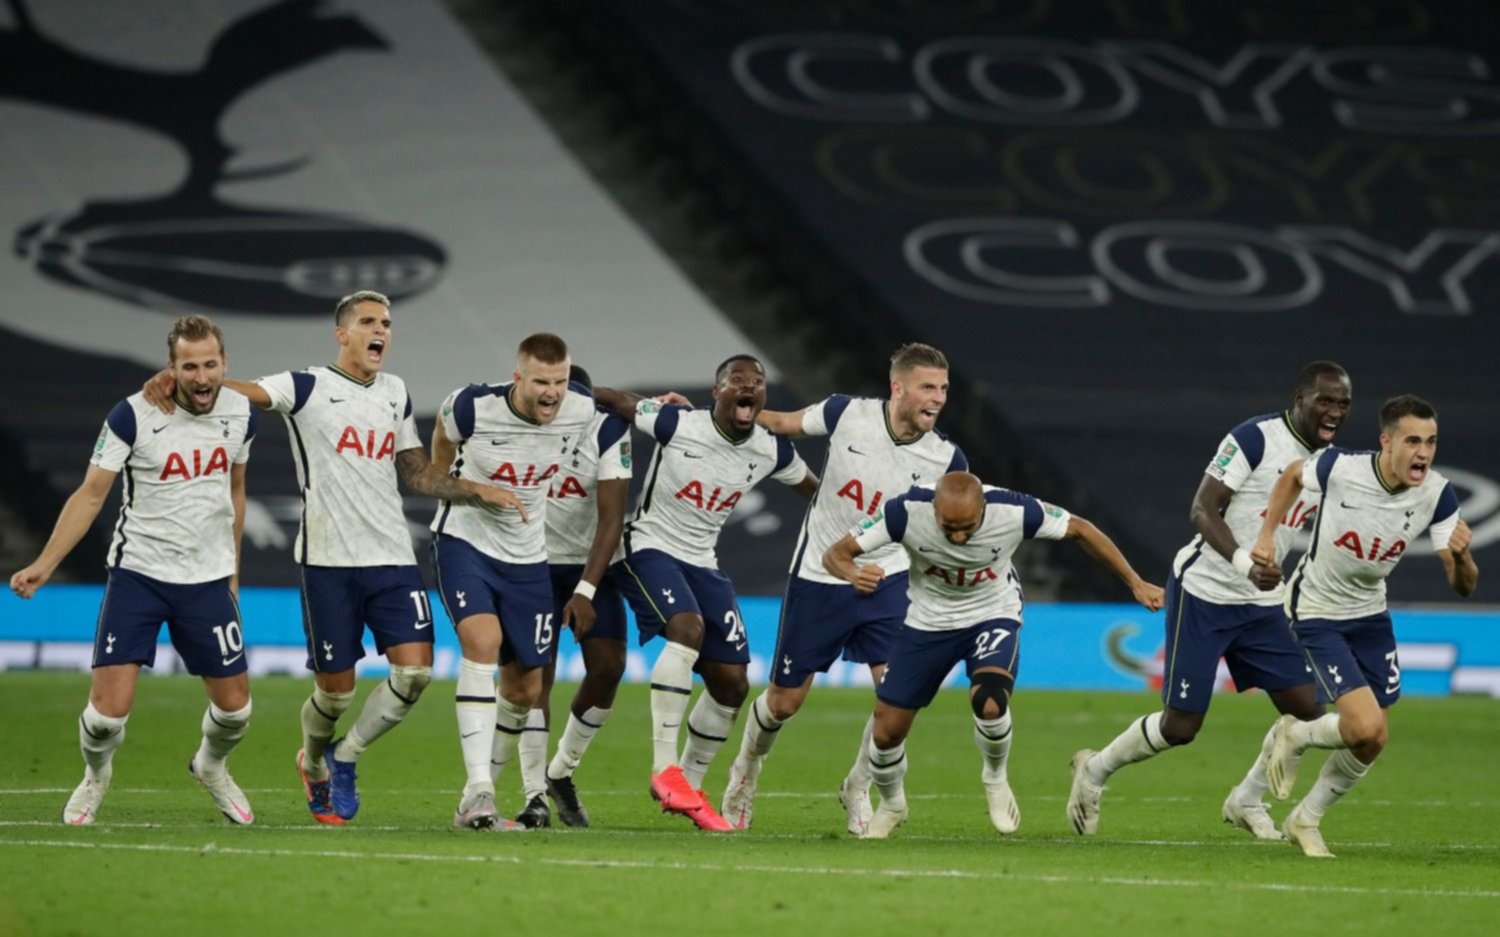 Con el show de Mourinho, Tottenham pasó de ronda al derrotar a Chelsea por penales